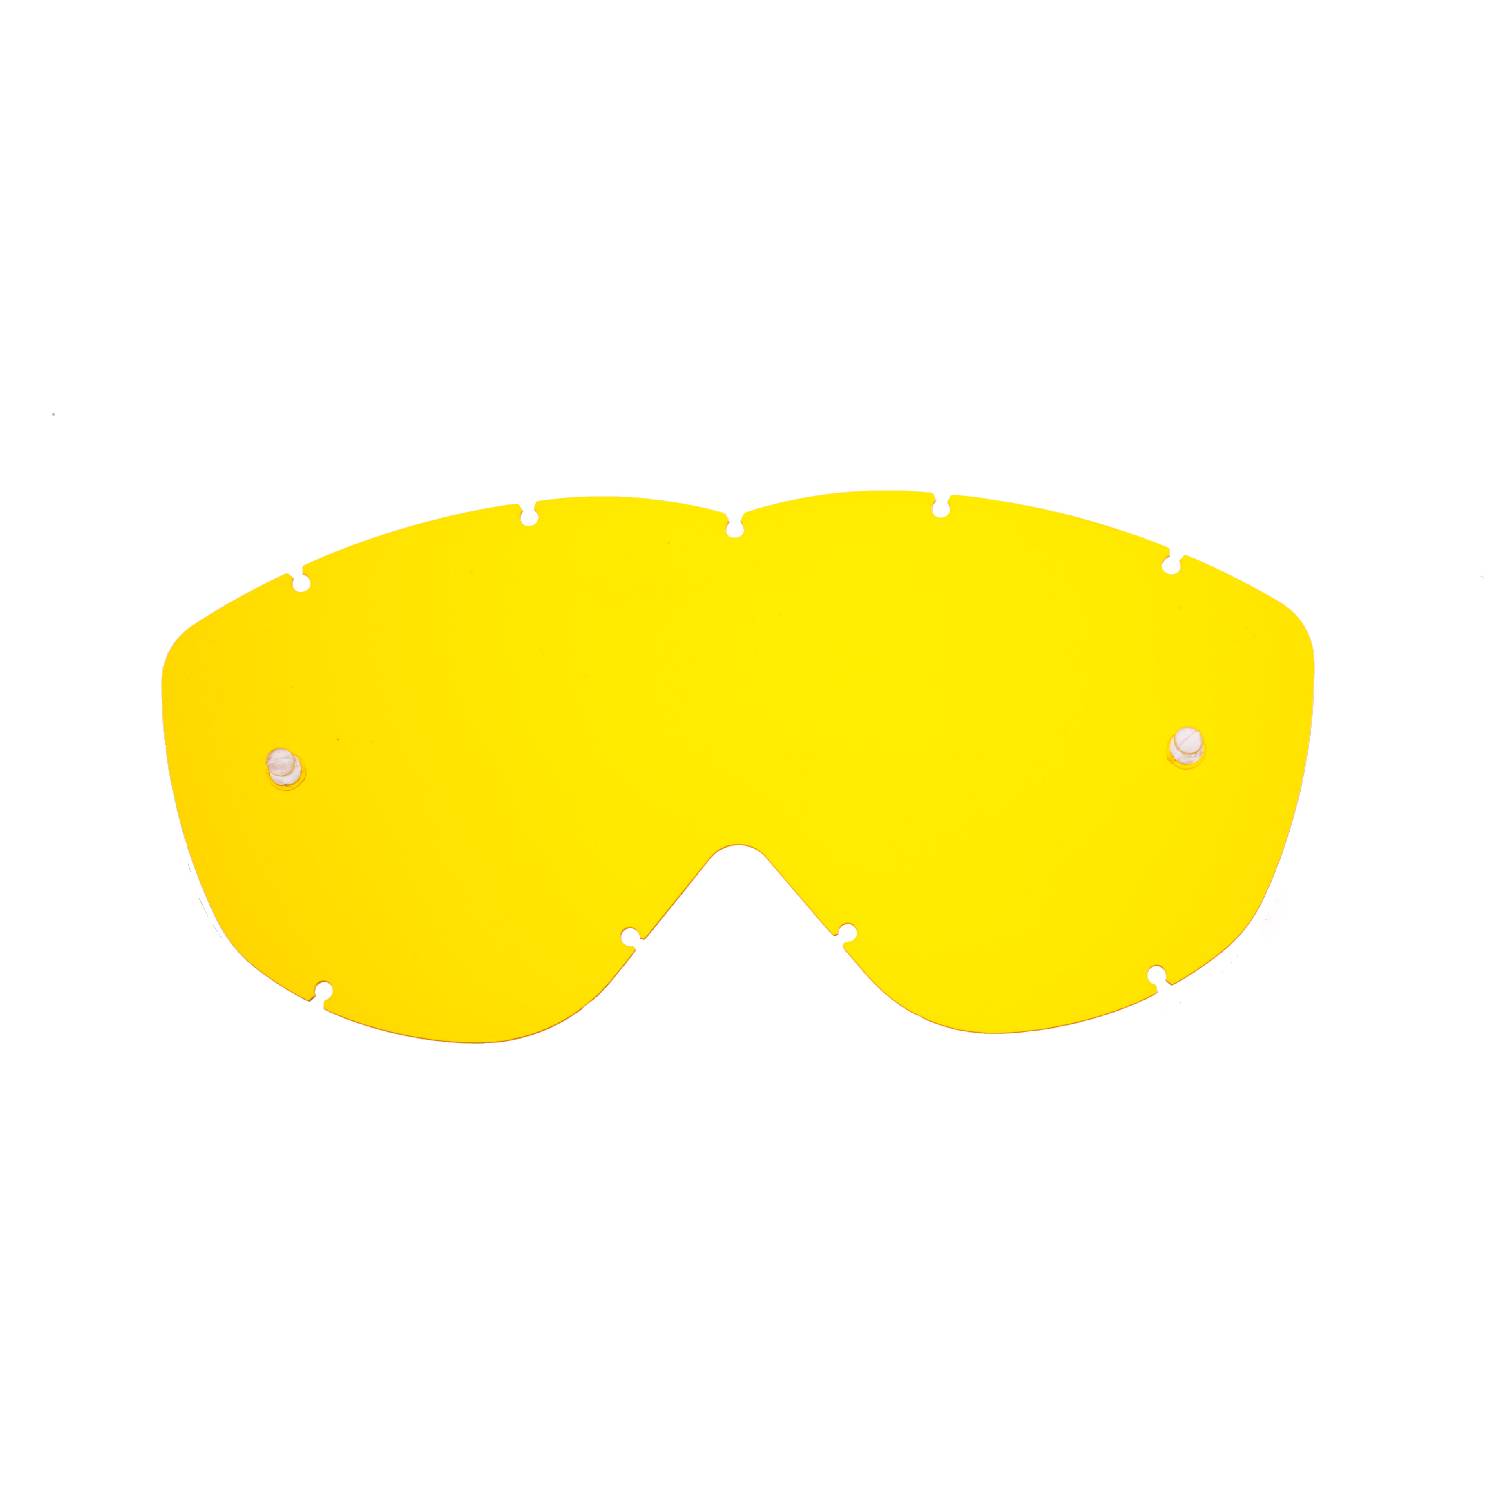 Lente di ricambio gialla compatibile per occhiale/maschera Spy Alloy / Targa